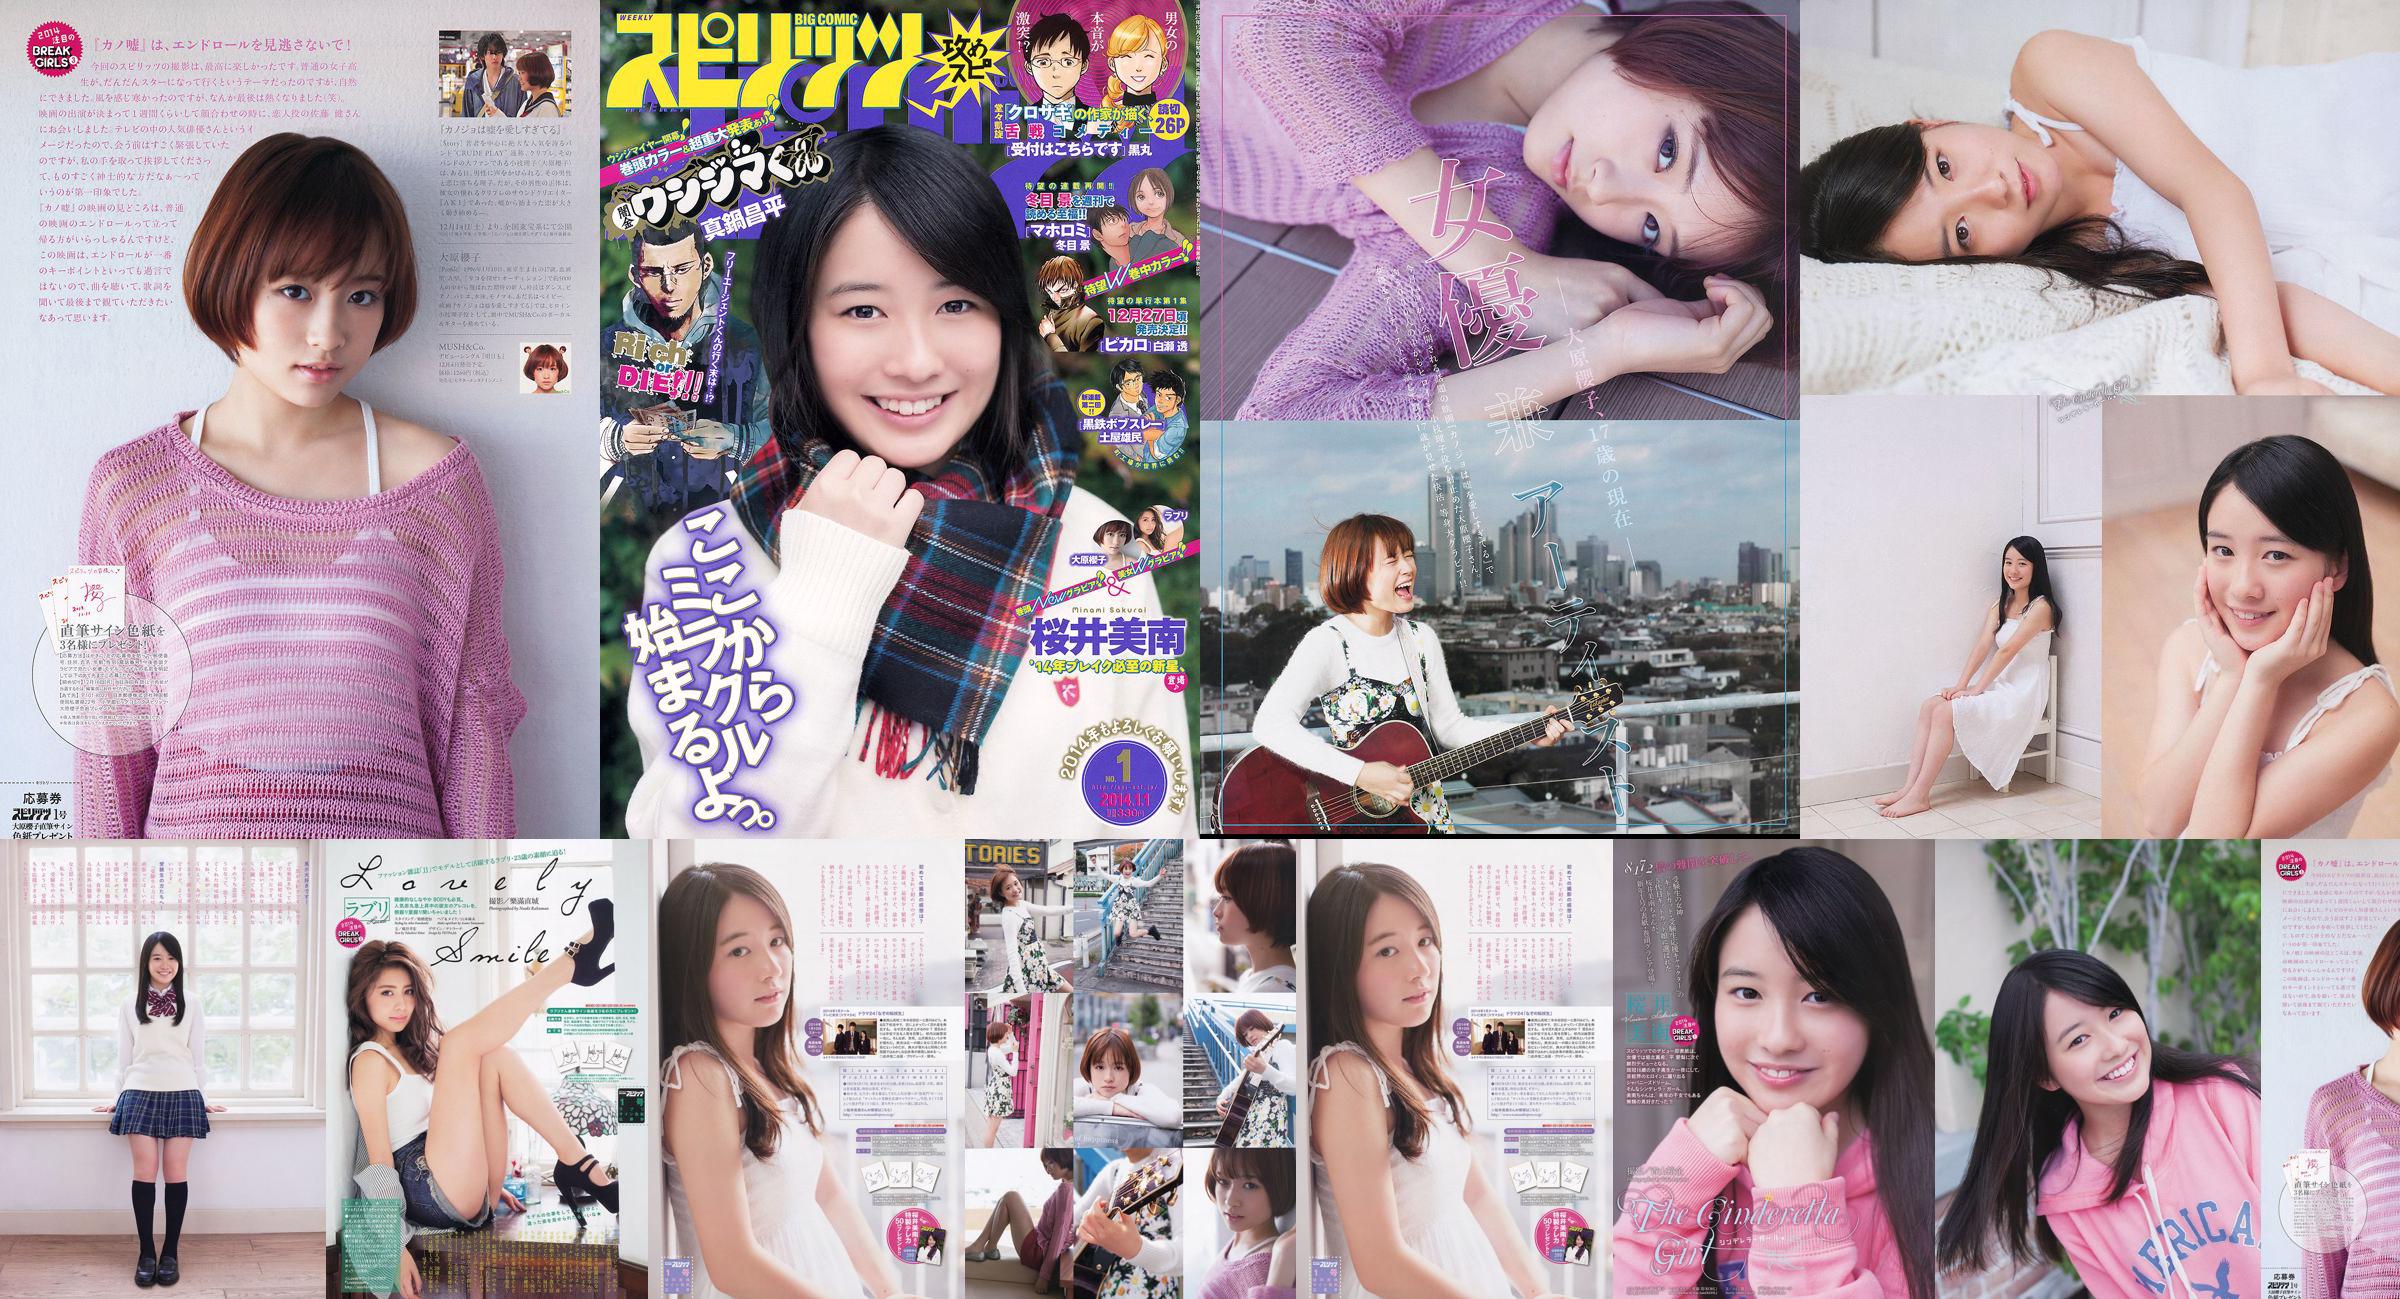 [Wöchentliche große Comic-Geister] Sakurai Minan Ohara Sakurako 2014 No.01 Photo Magazine No.17e0ba Seite 3